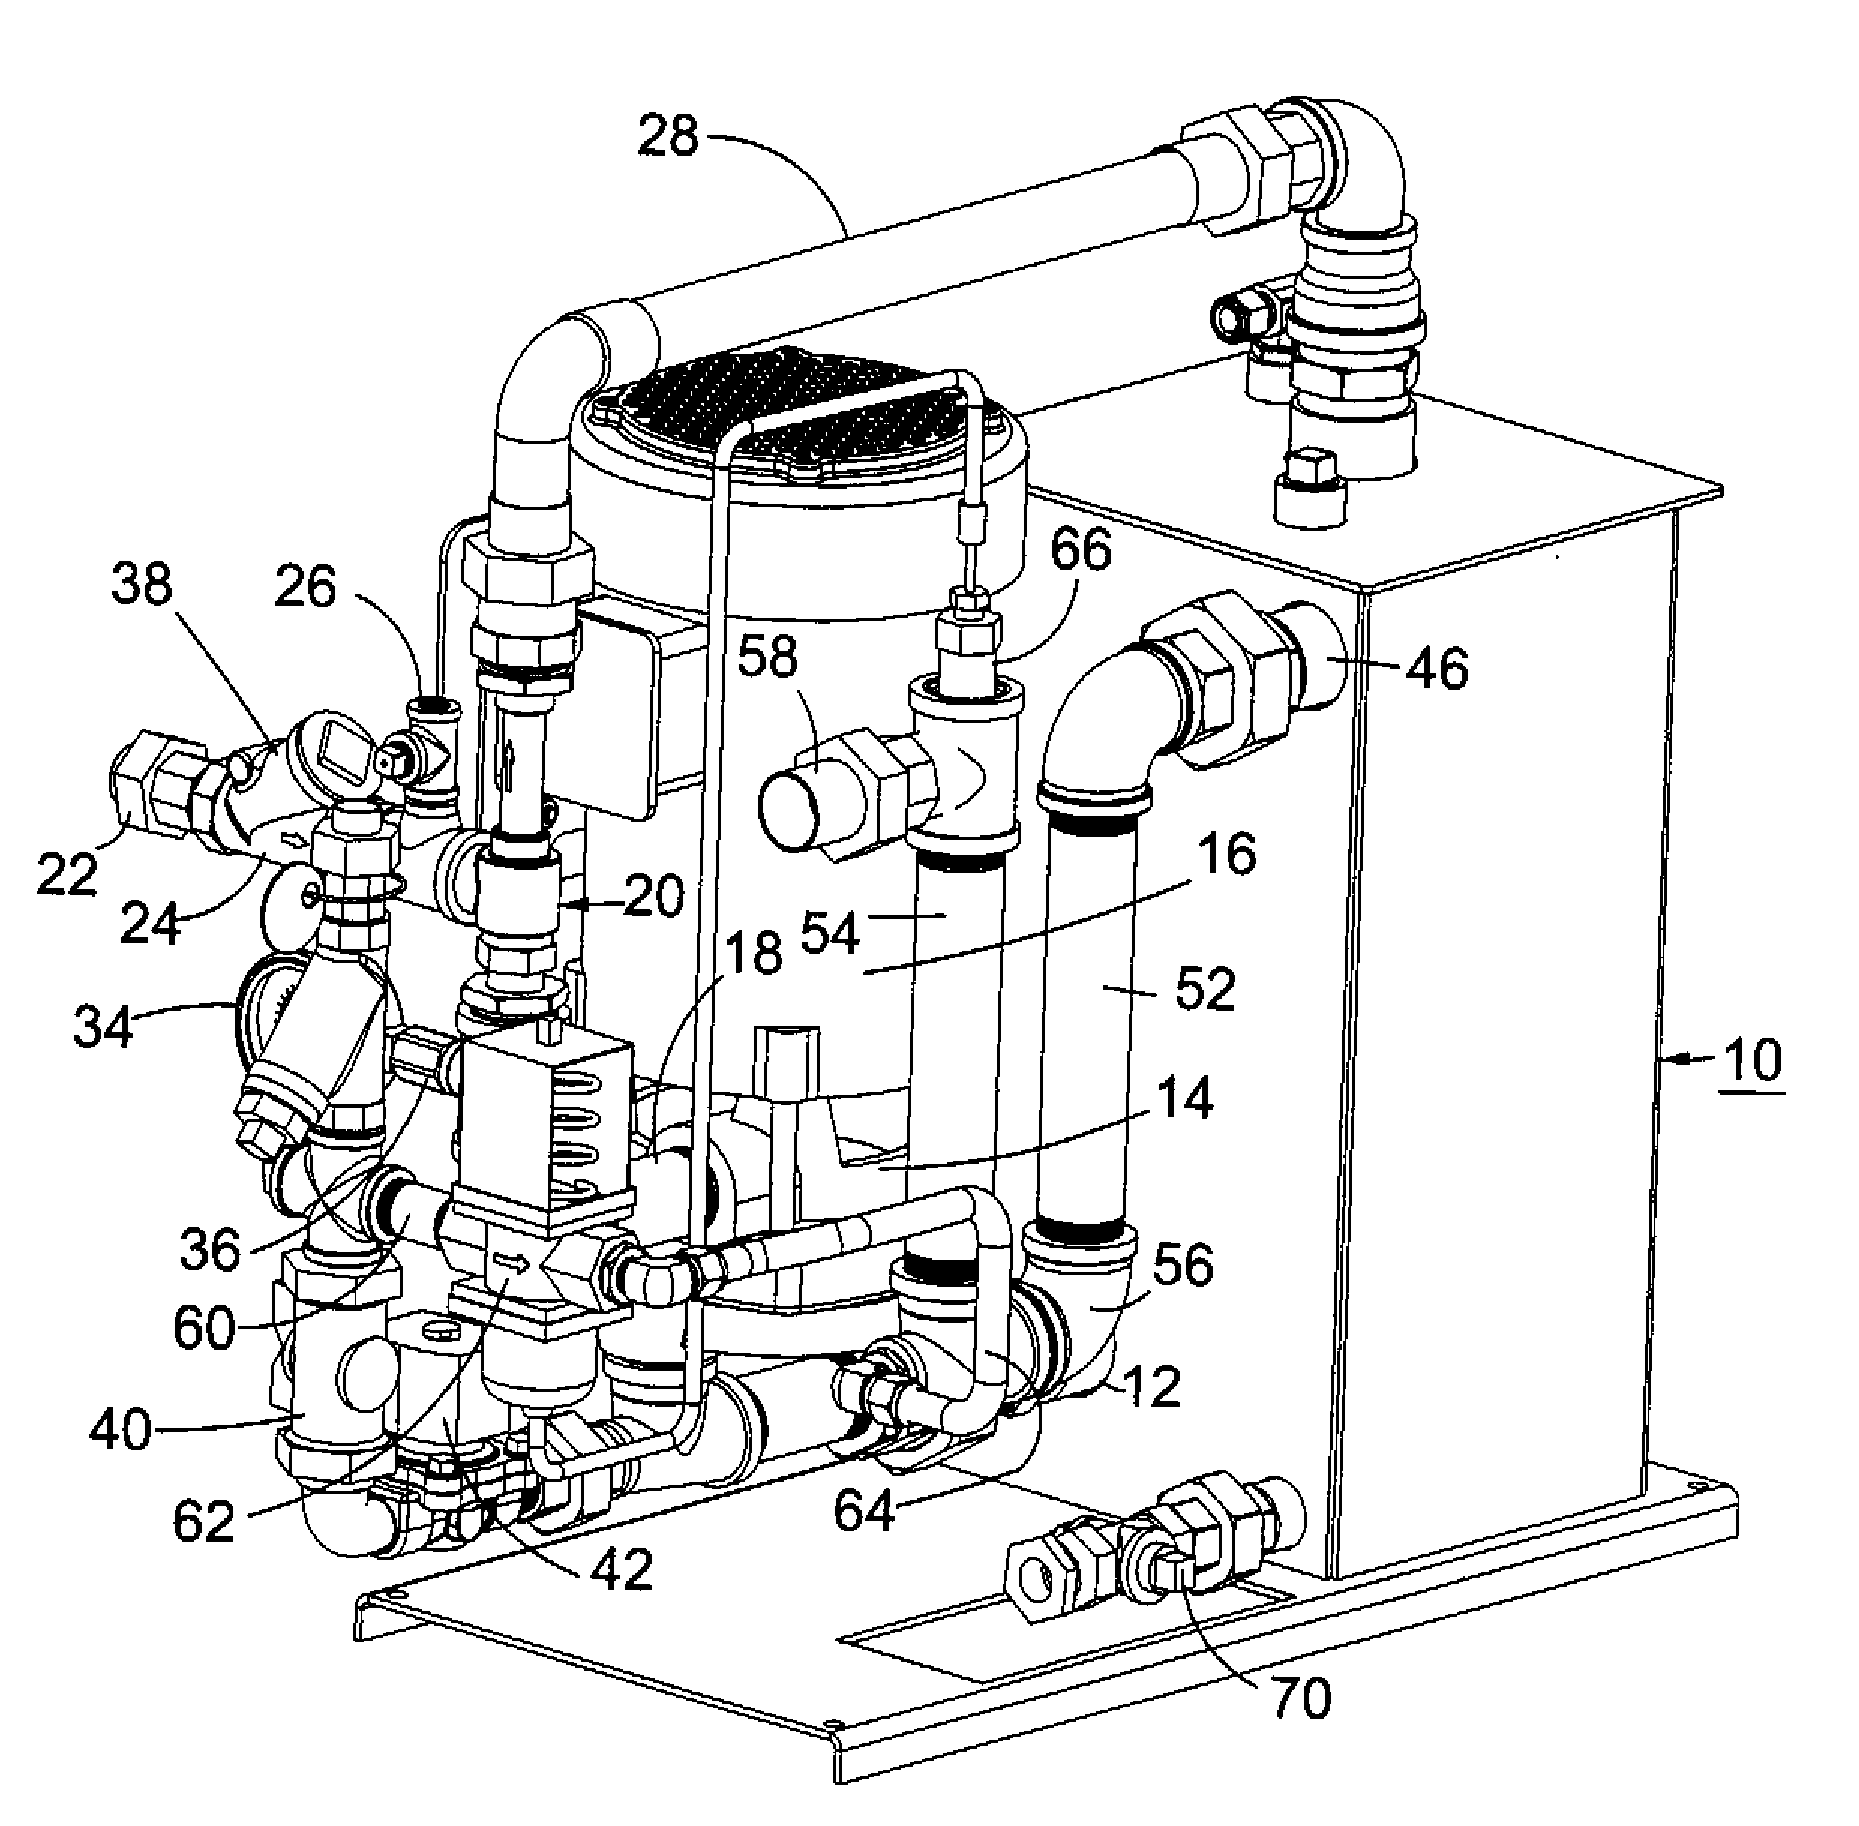 Vacuum unit for steam sterilizer